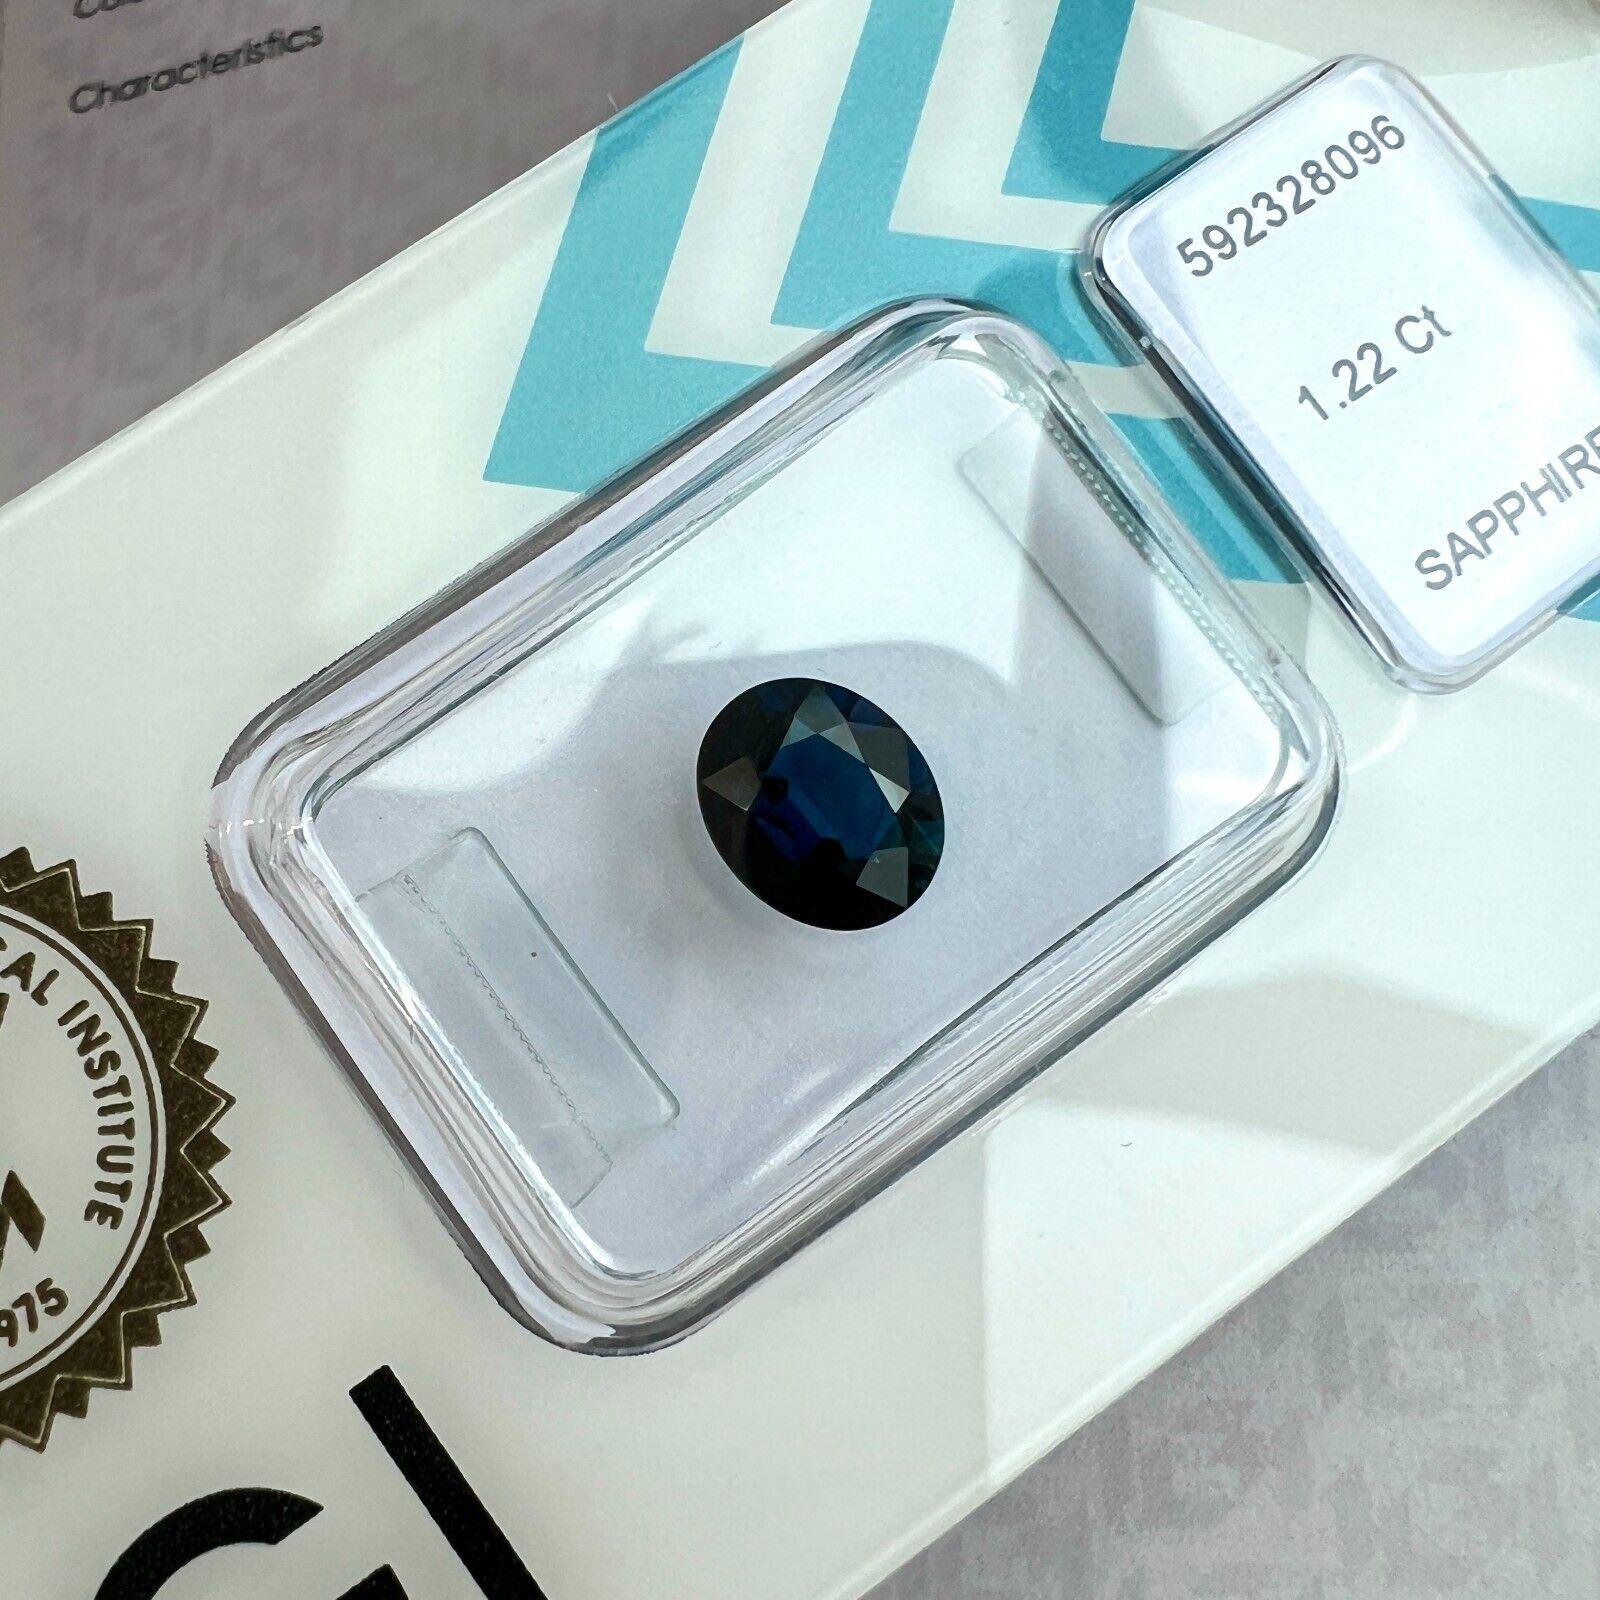 1.22ct Deep Blue Natural Sapphire Rare Oval Cut IGI Certified Loose Gemstone VVS

Saphir naturel bleu profond, taille ovale, sous blister IGI.
1,22 carat avec une excellente coupe ovale et une excellente clarté, une pierre très propre.